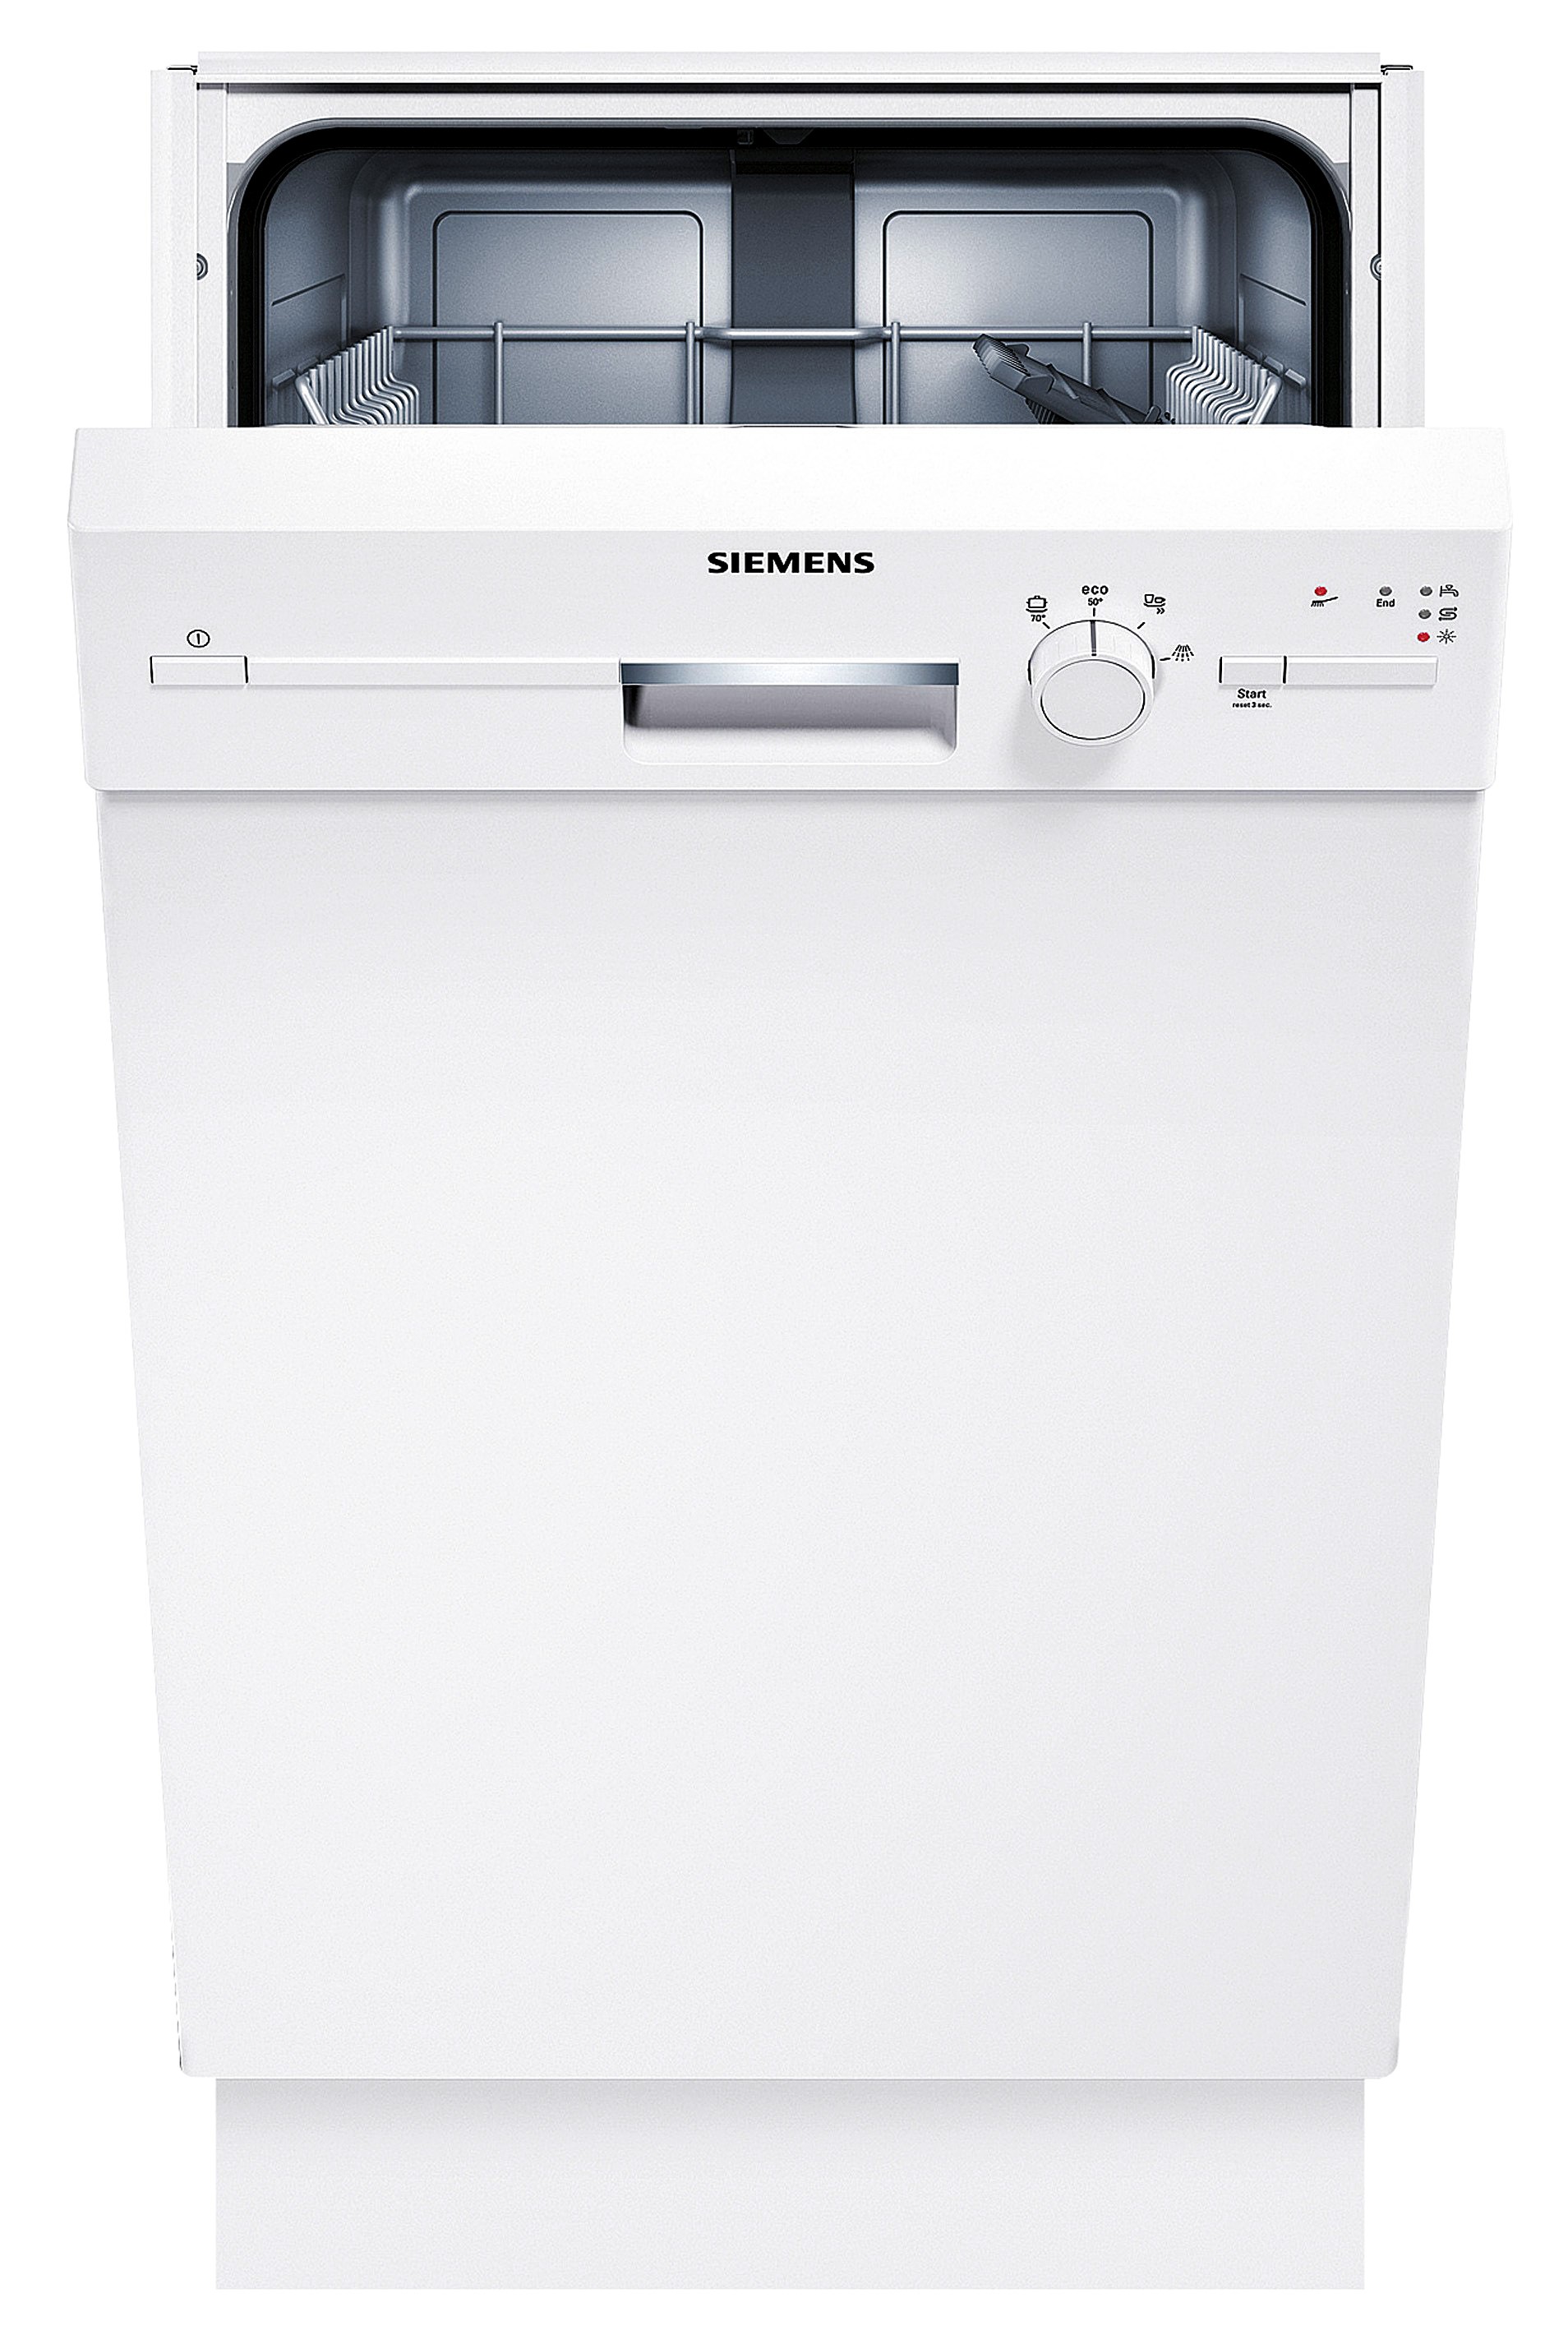 Siemens opvaskemaskine manual